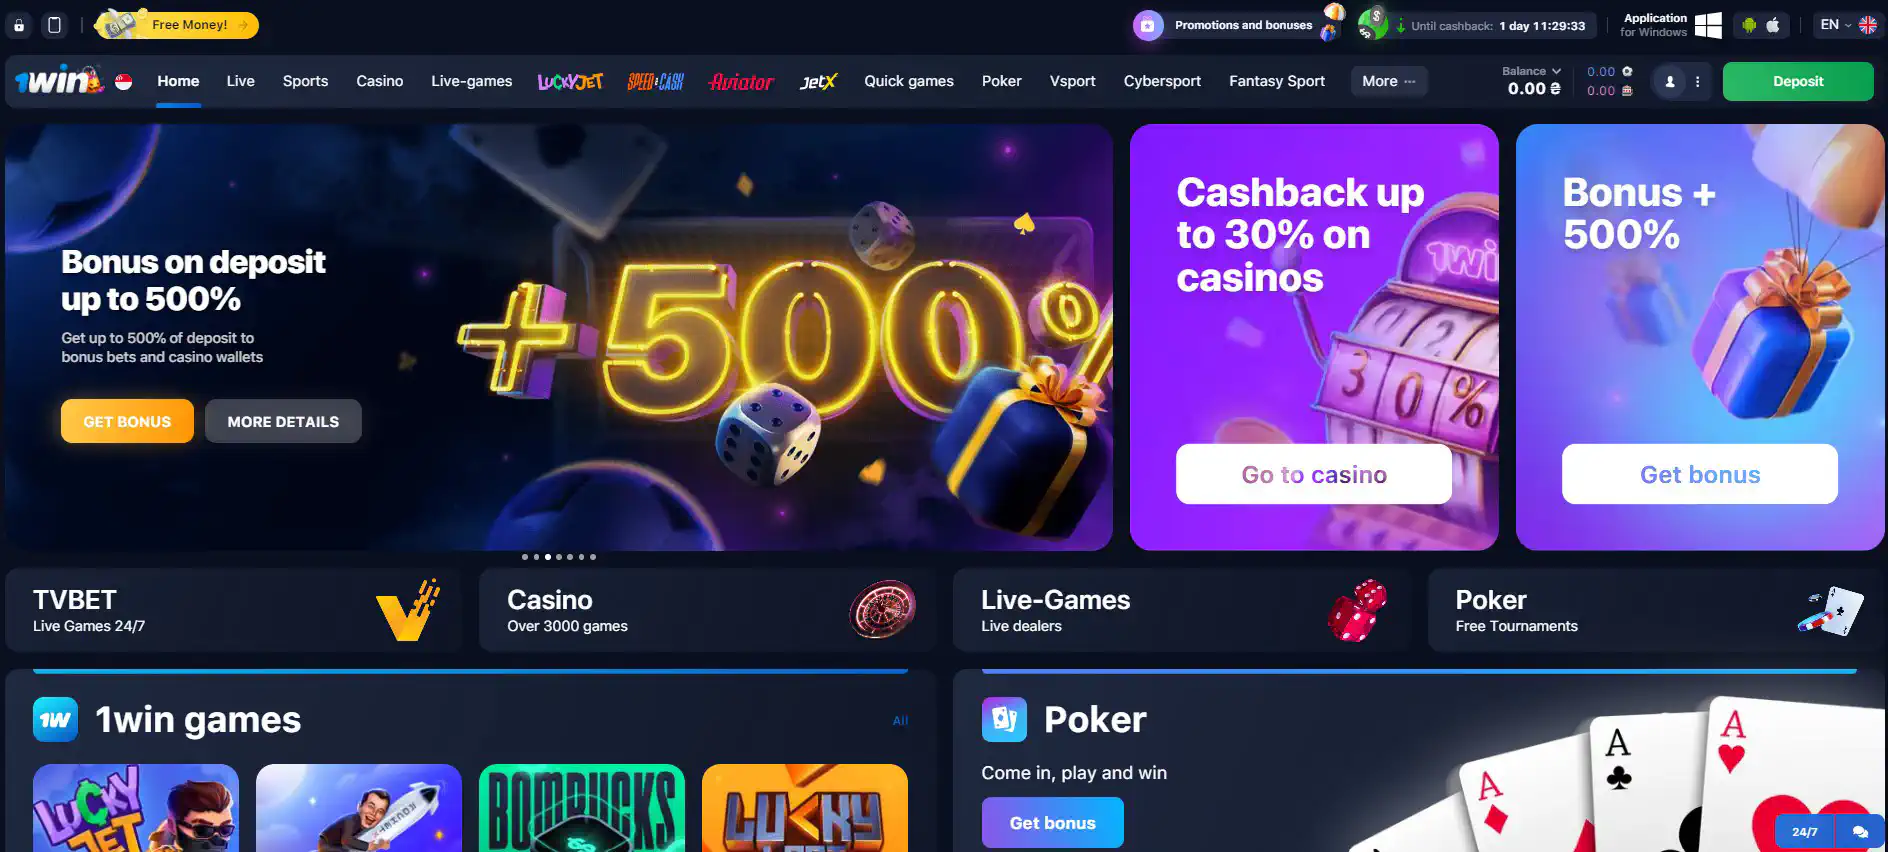 1win casino online site